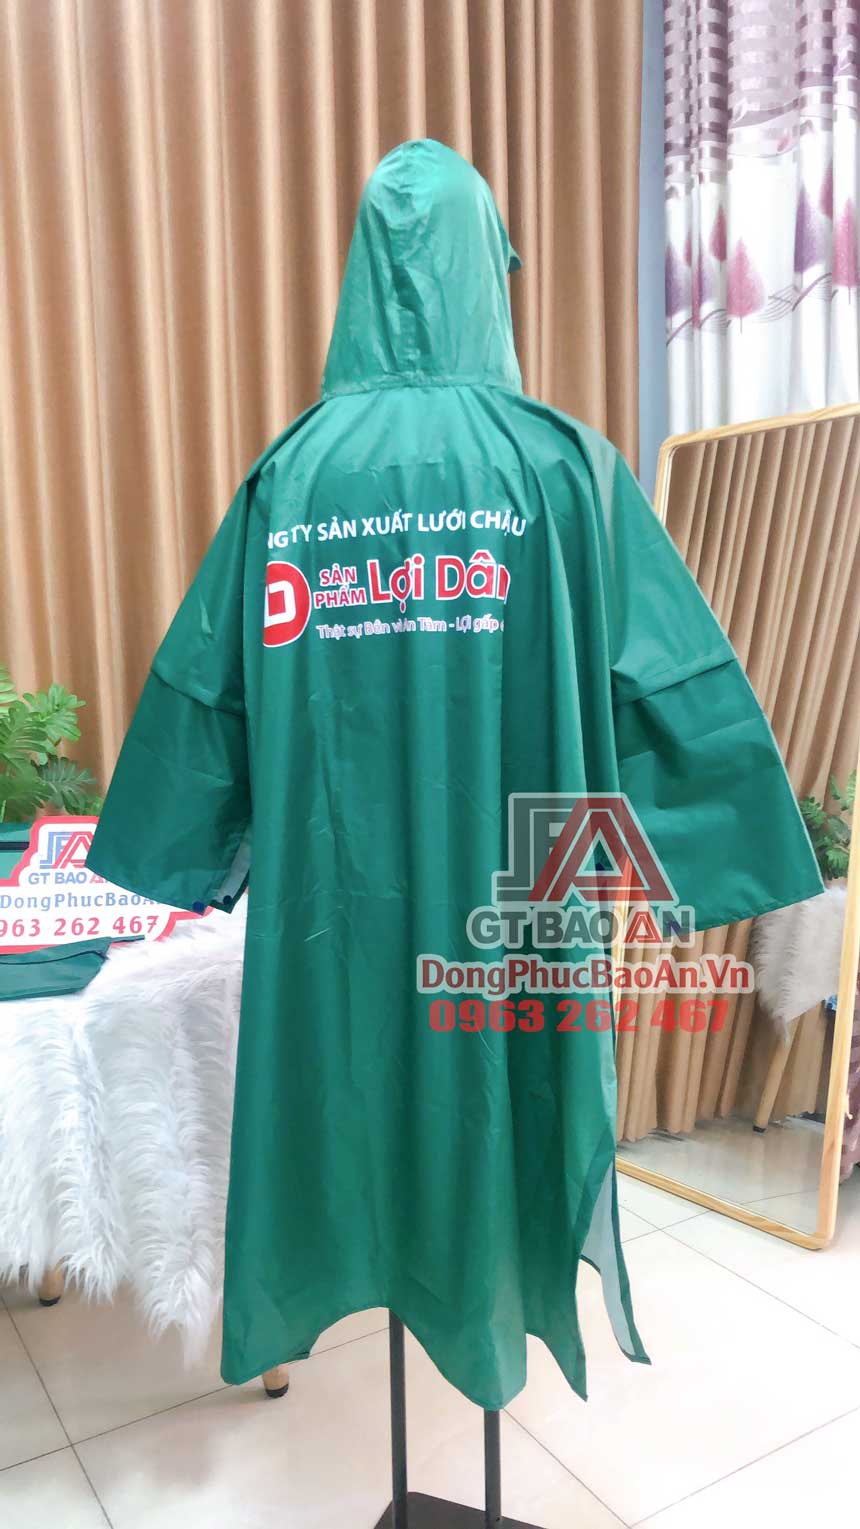 Đặt áo mưa in logo công ty theo yêu cầu TPHCM – Mẫu áo mưa cánh dơi vải dù vân tổ ong công ty Lợi Dân